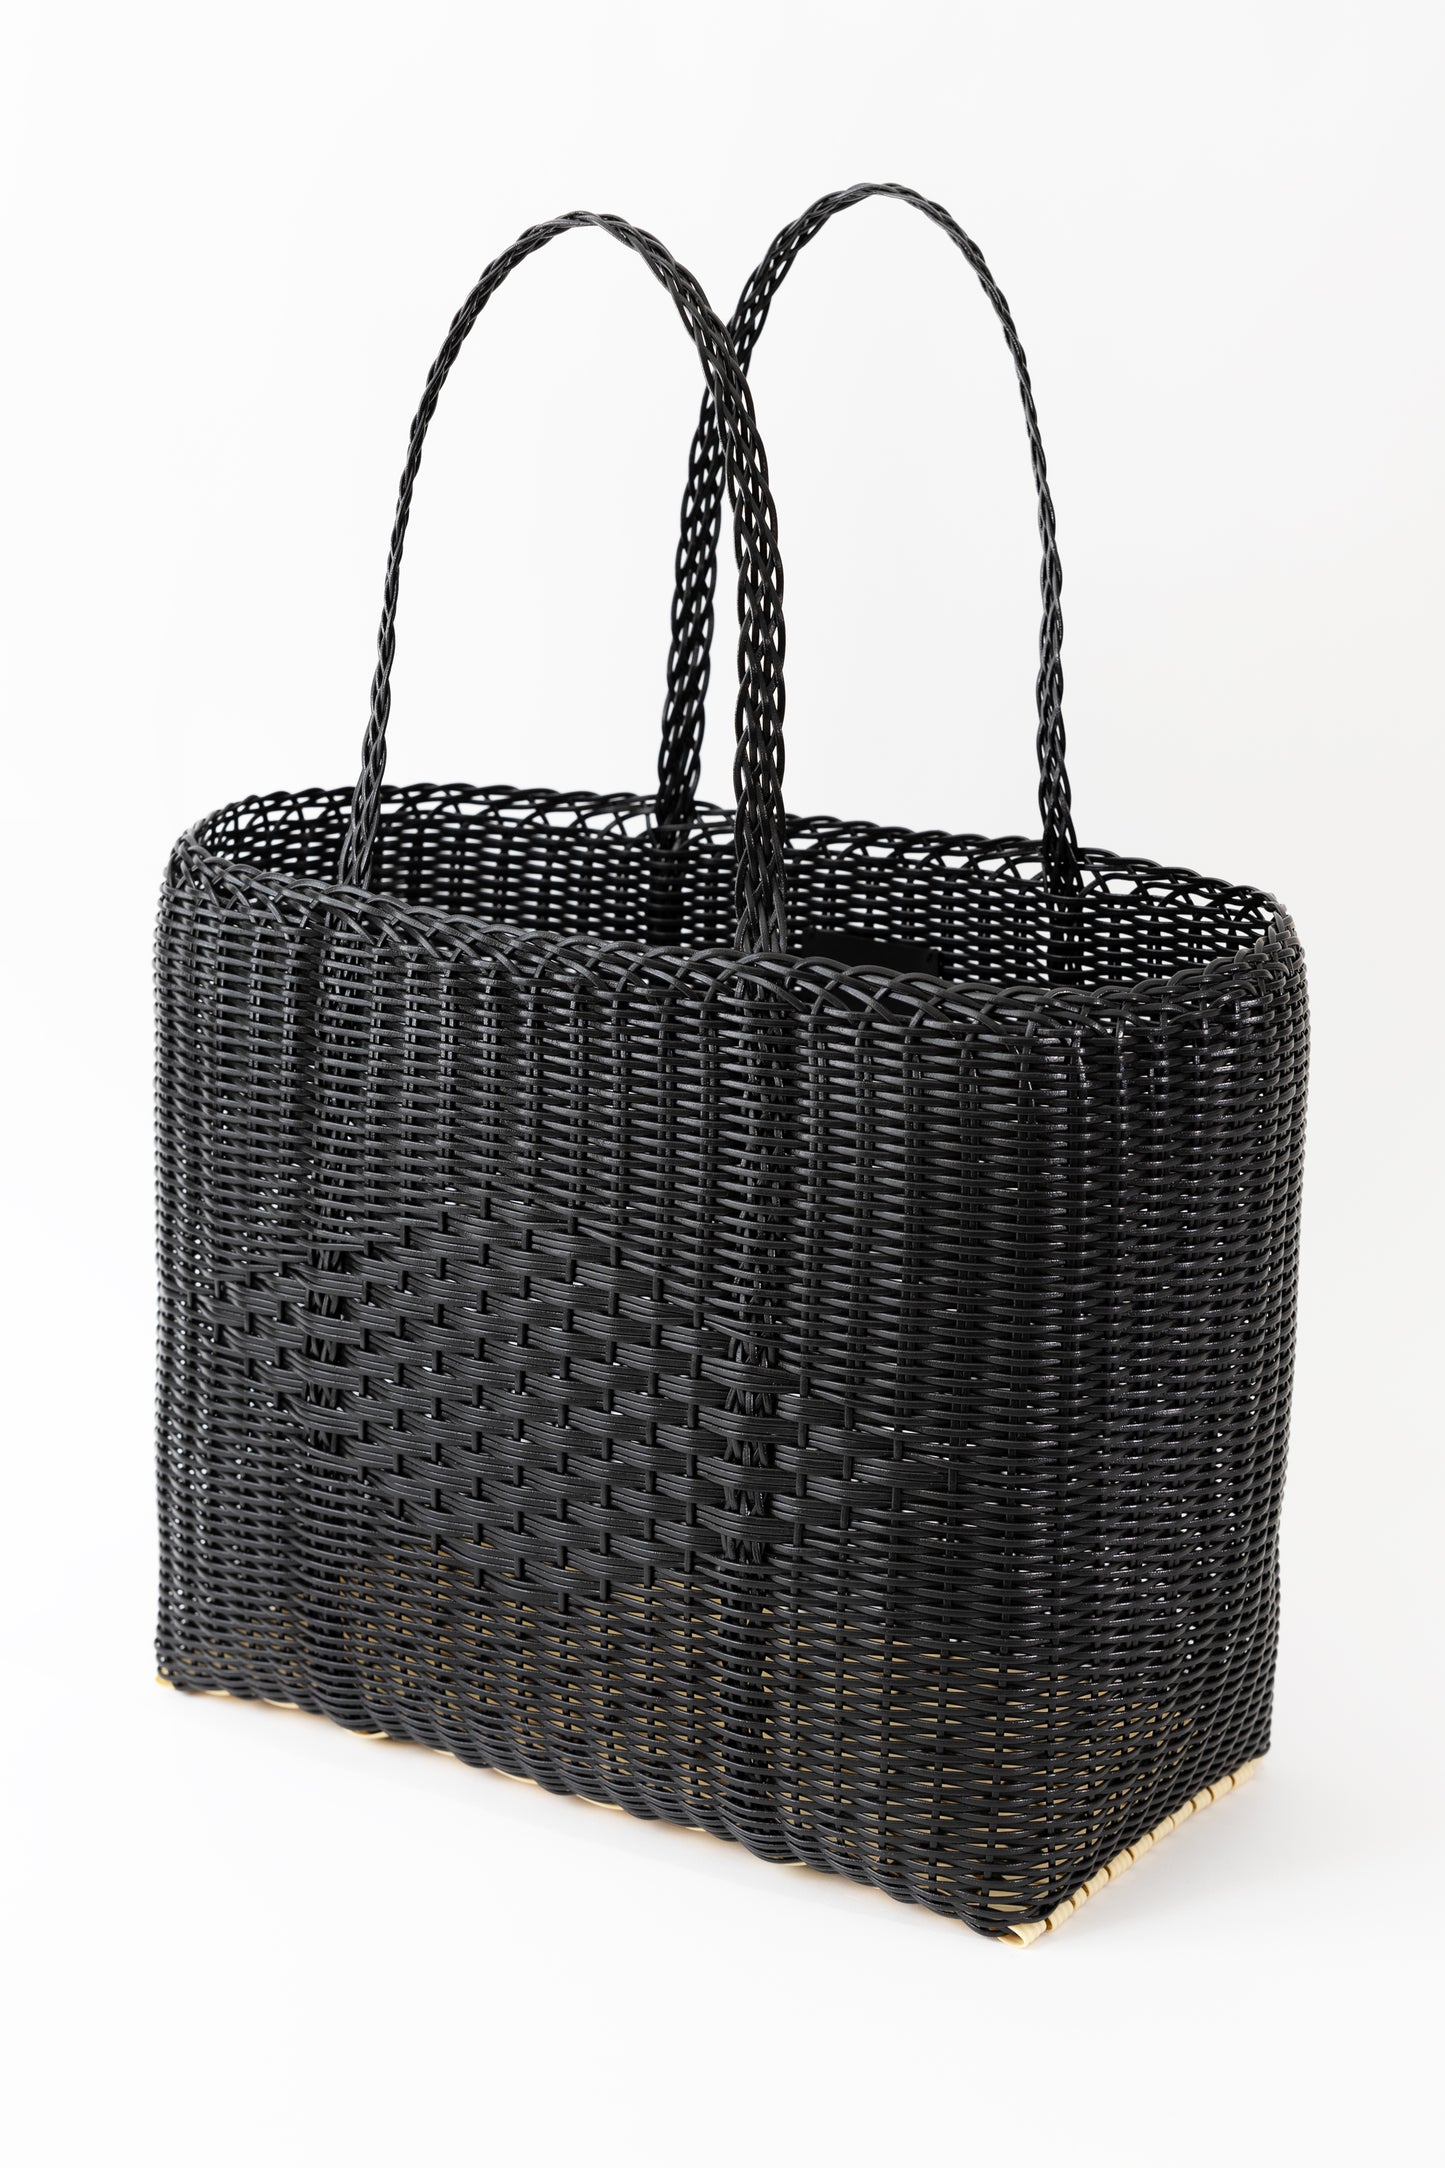 Diamond weave tote bag in black